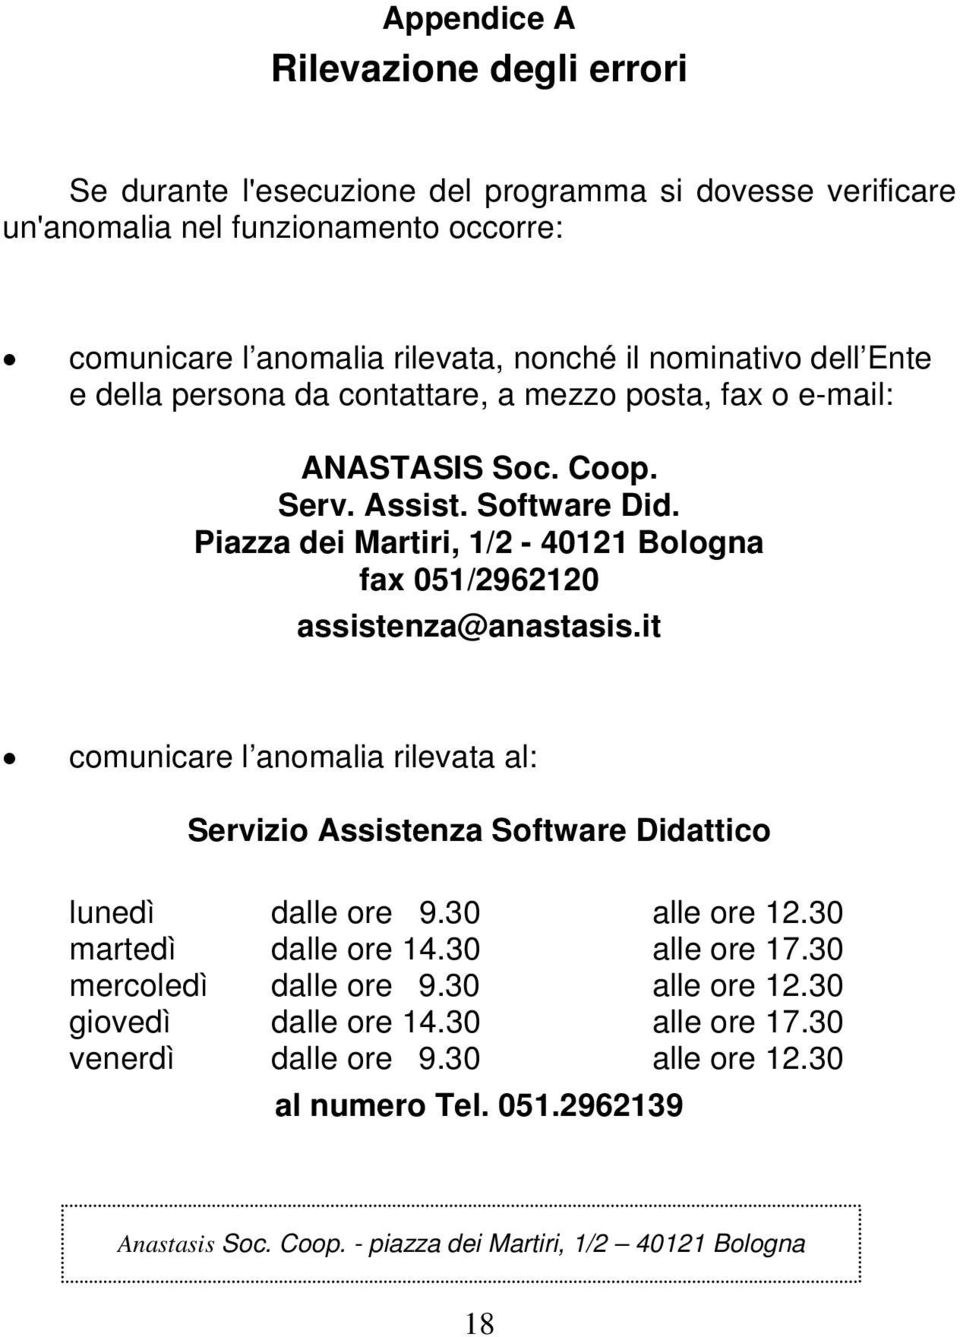 Piazza dei Martiri, 1/2-40121 Bologna fax 051/2962120 assistenza@anastasis.it comunicare l anomalia rilevata al: Servizio Assistenza Software Didattico lunedì dalle ore 9.30 alle ore 12.